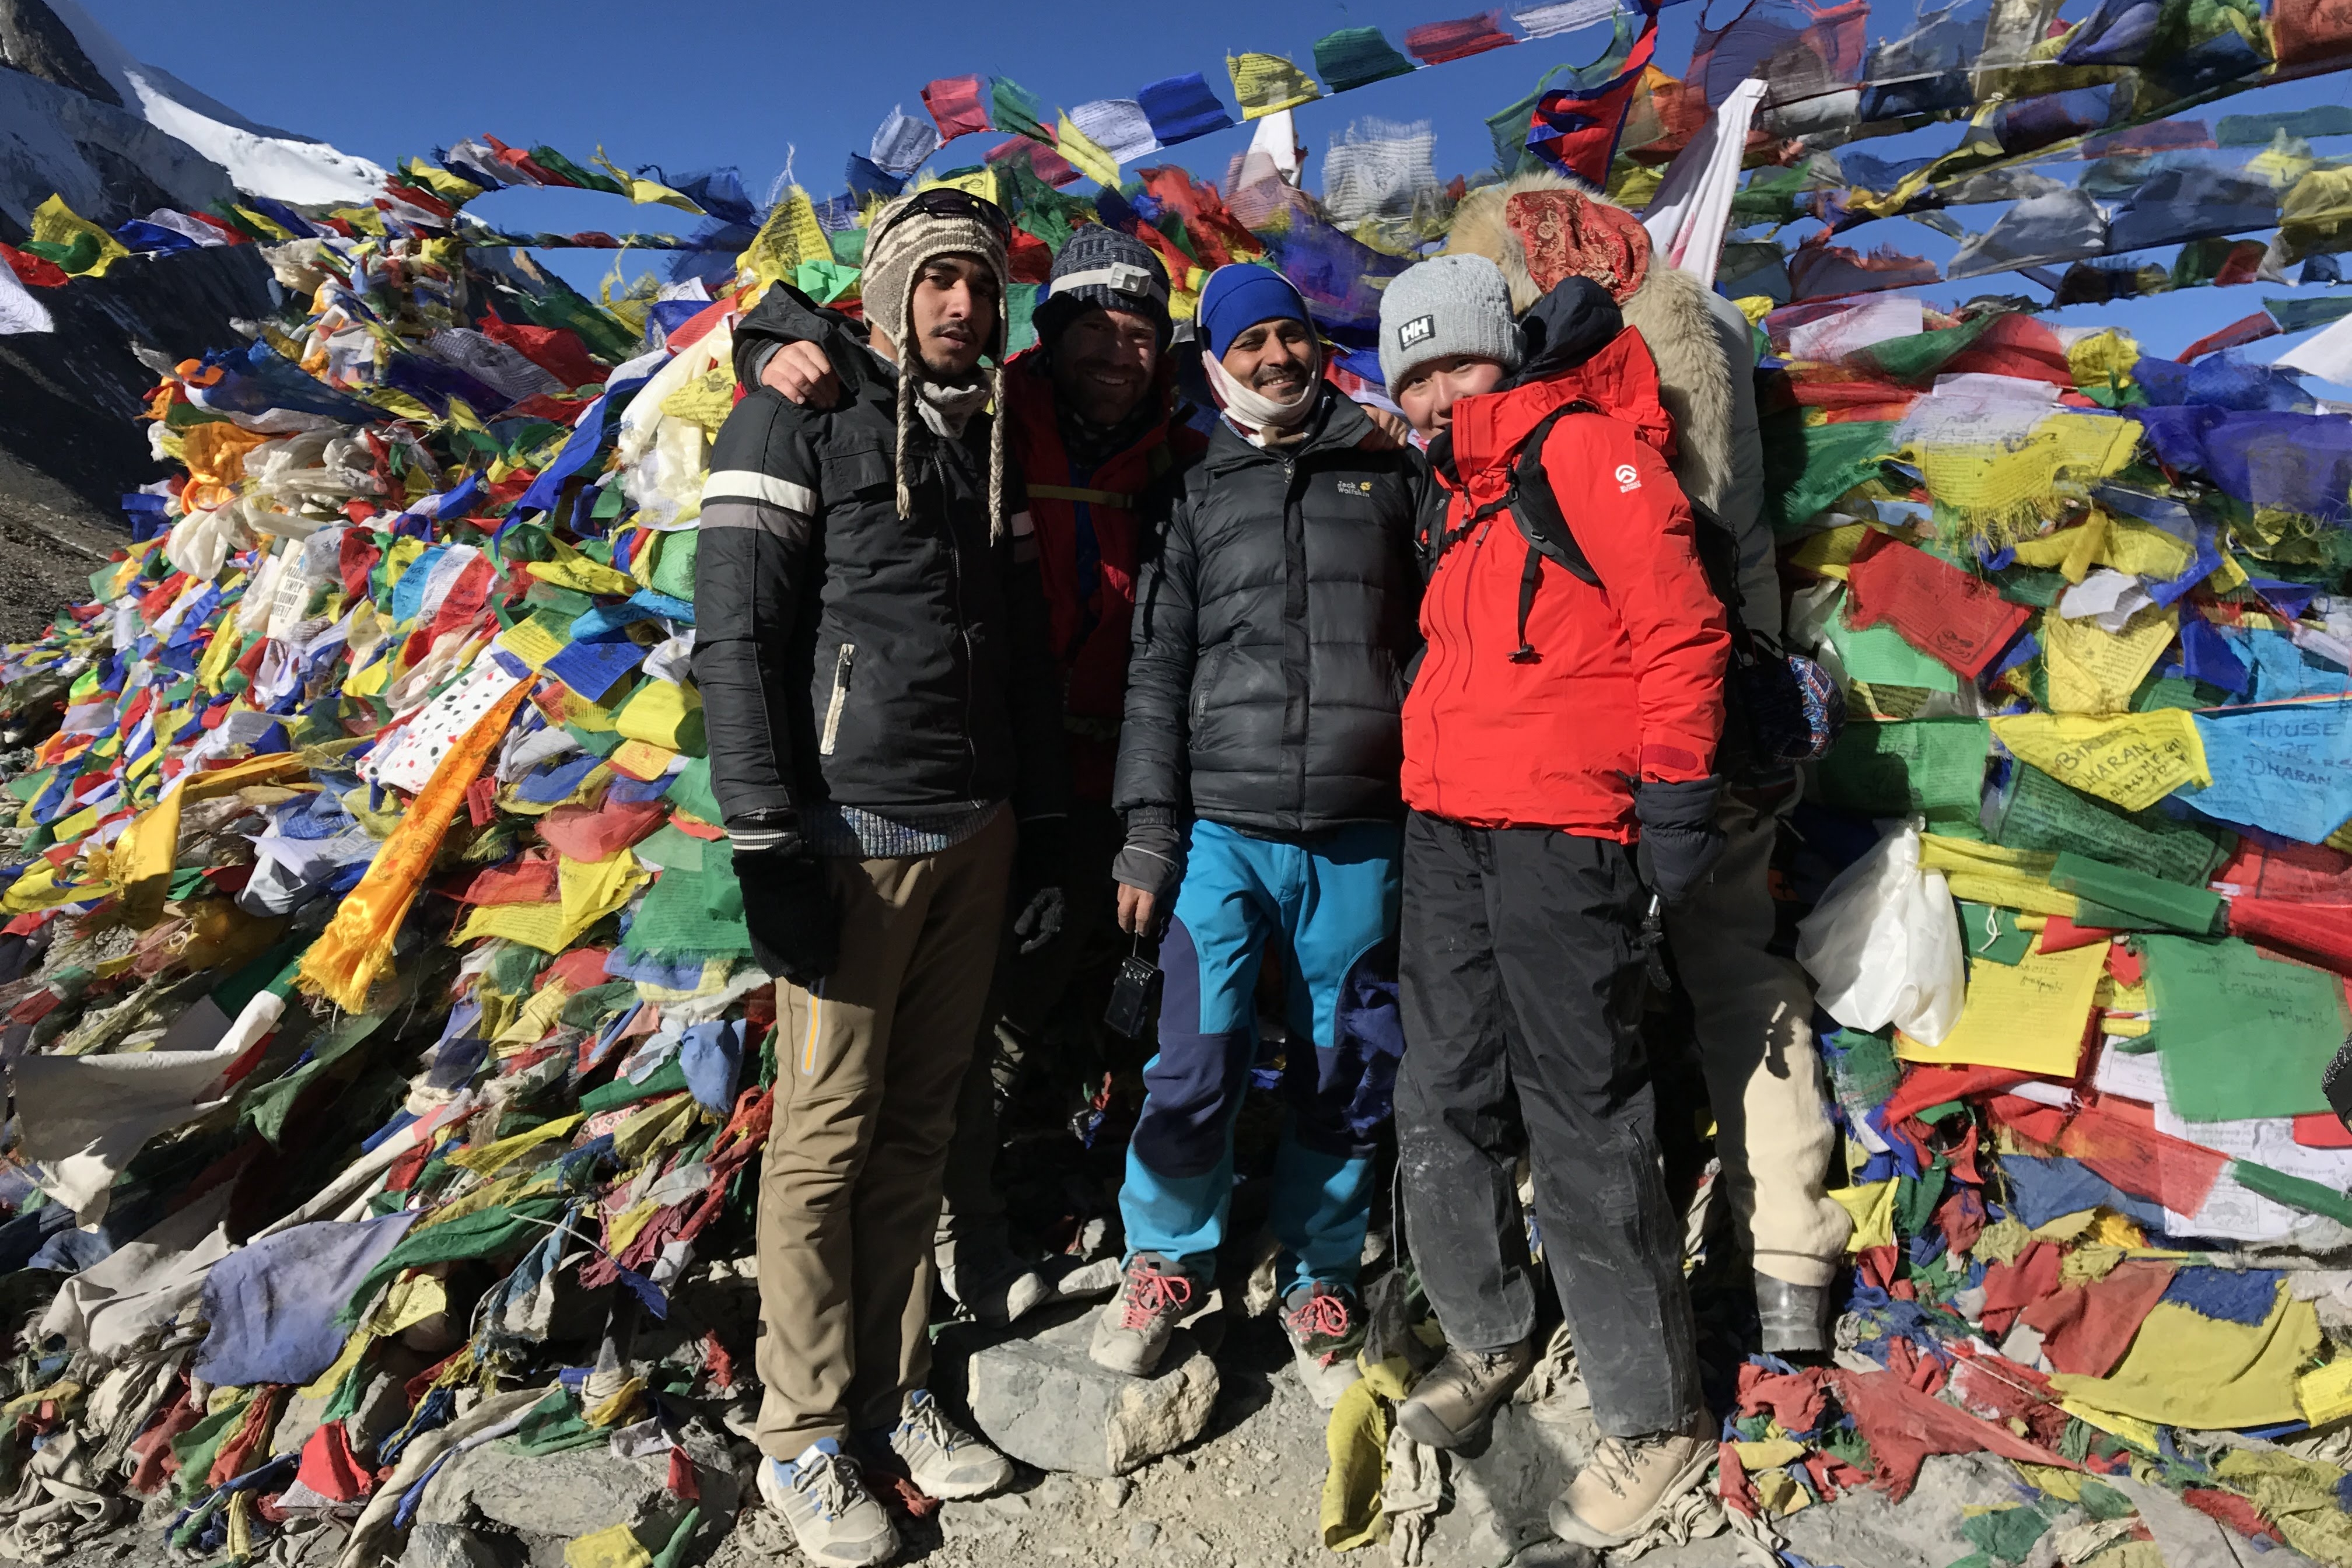 Annapurna Circuit Trekking in Nepal